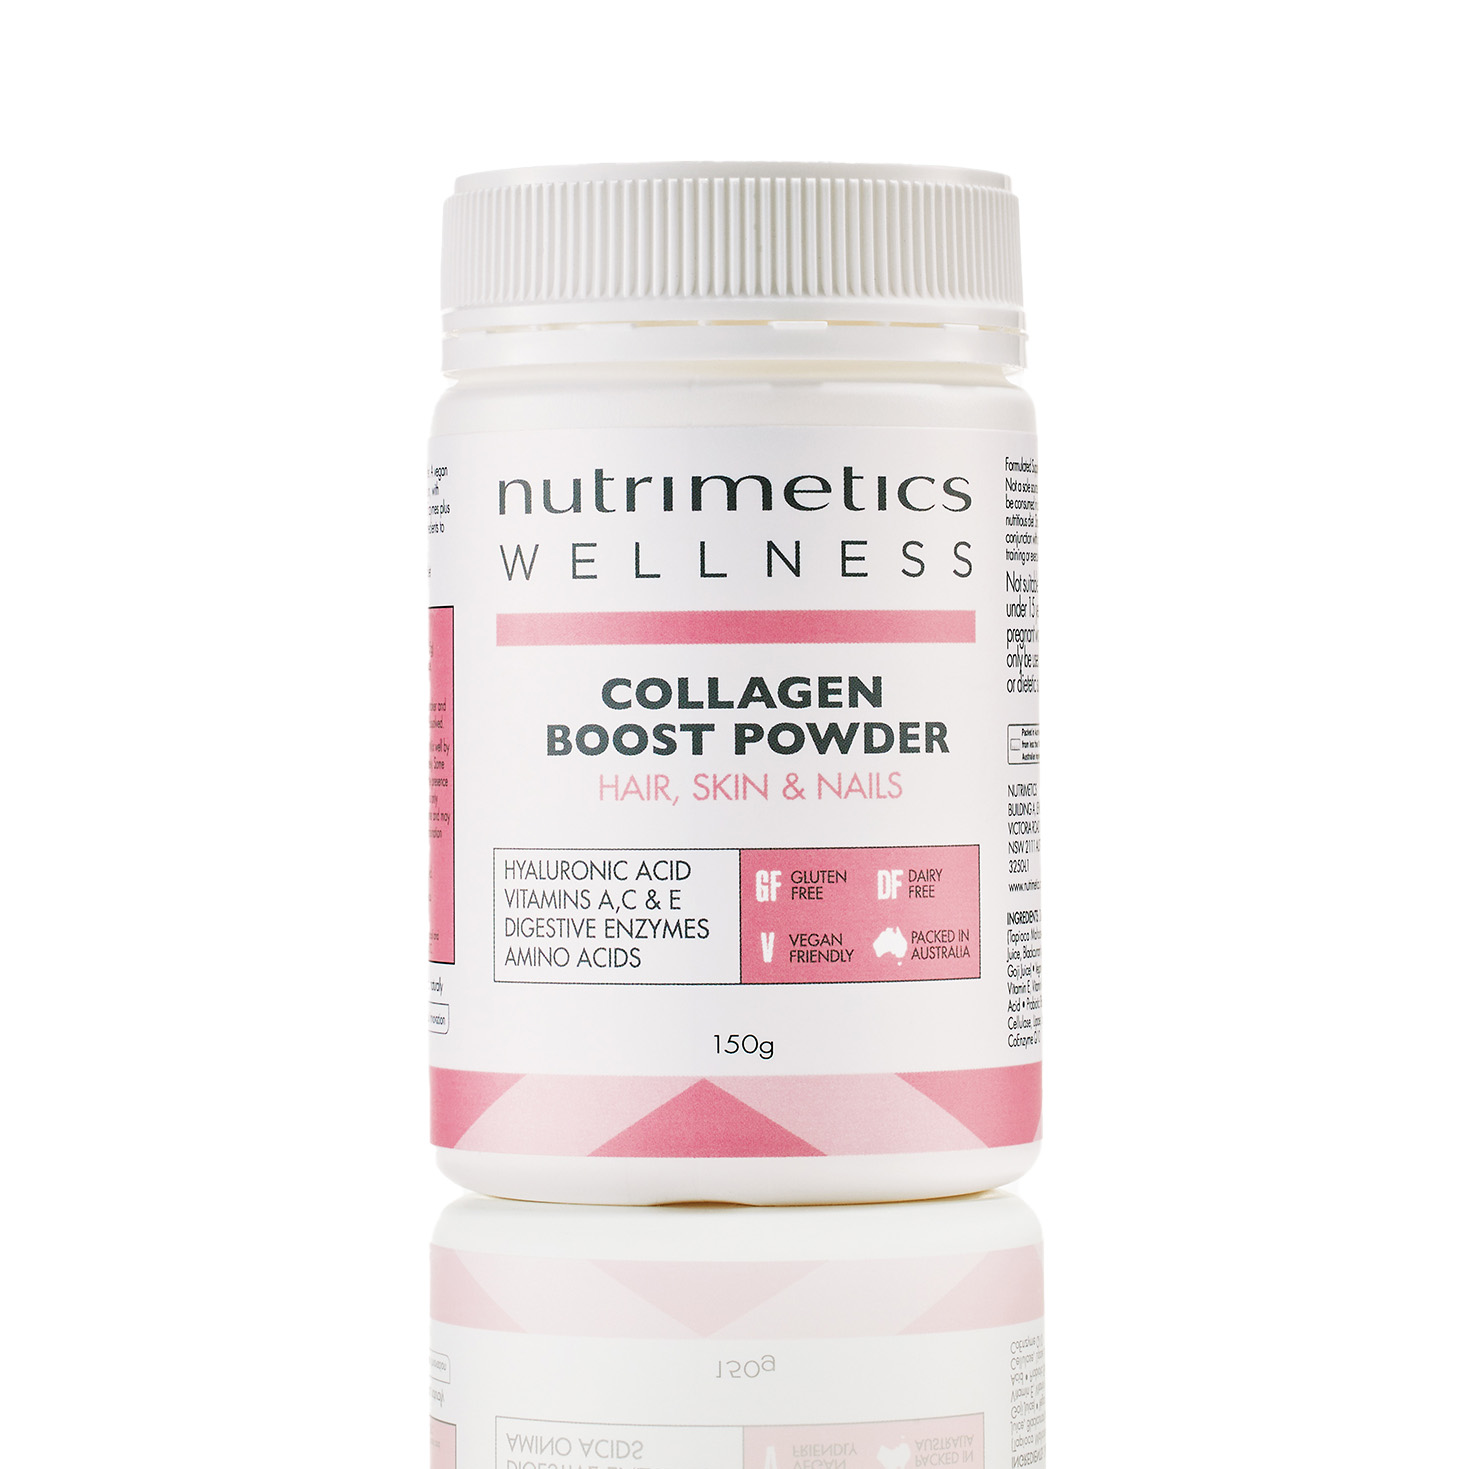 Nutrimetics Wellness Collagen Boost Powder Reviews - beautyheaven